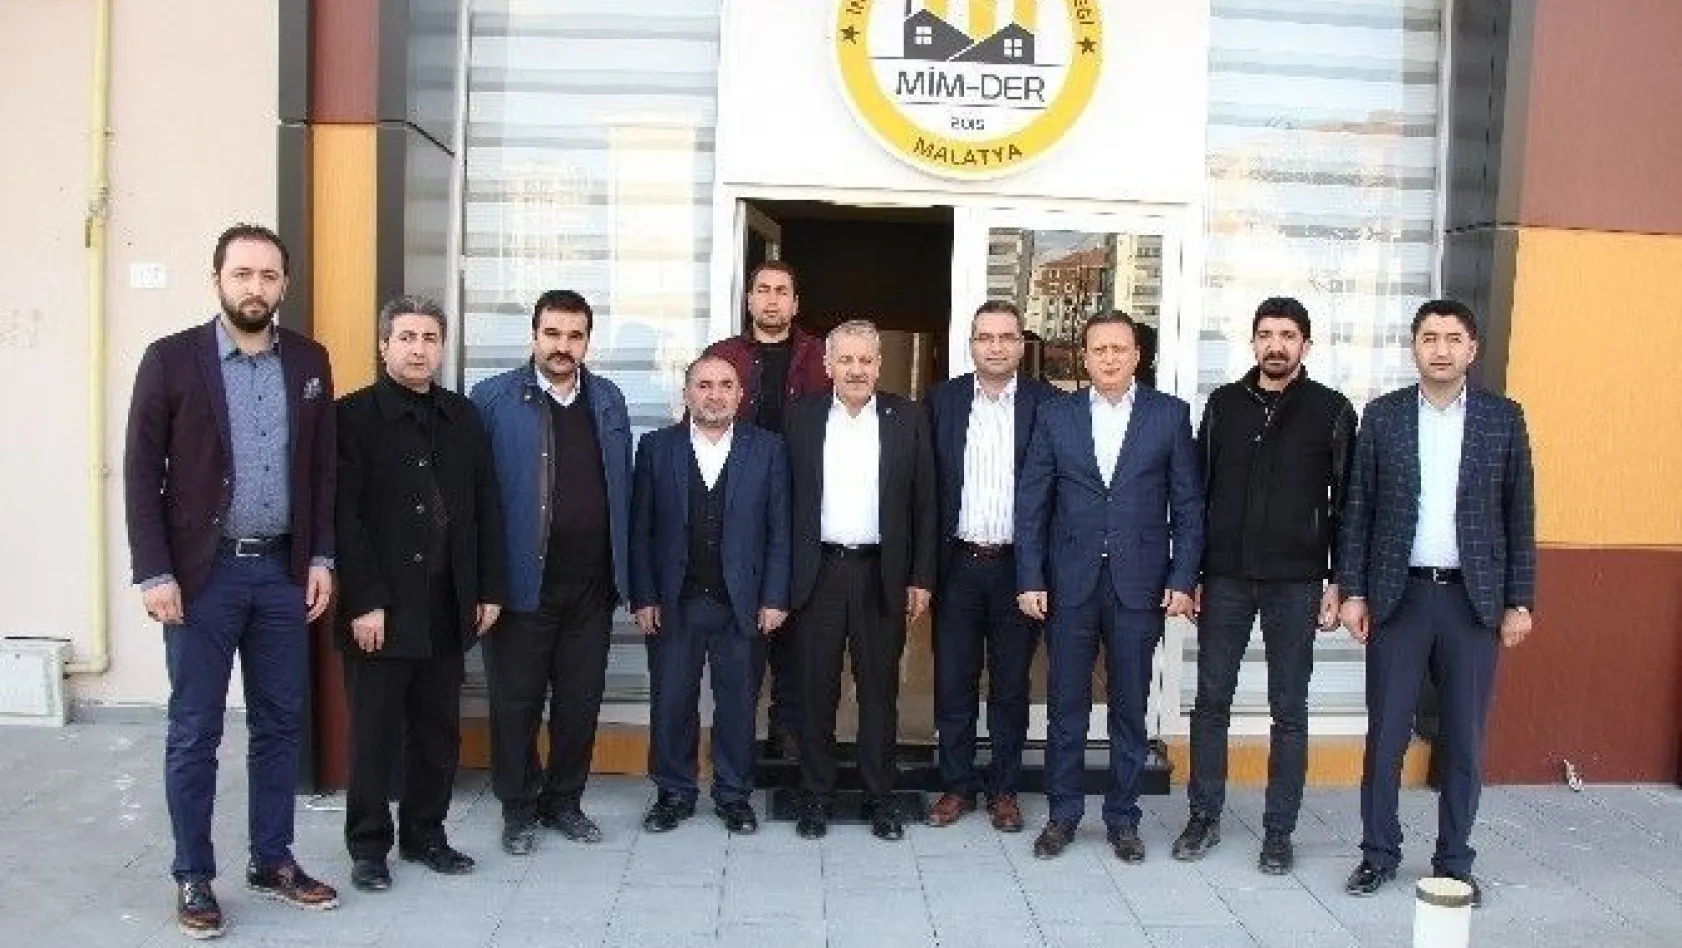 AK Parti Milletvekili Mustafa Şahin: 'Asılında sorun olan Cumhuriyet Halk Partisi'dir'
